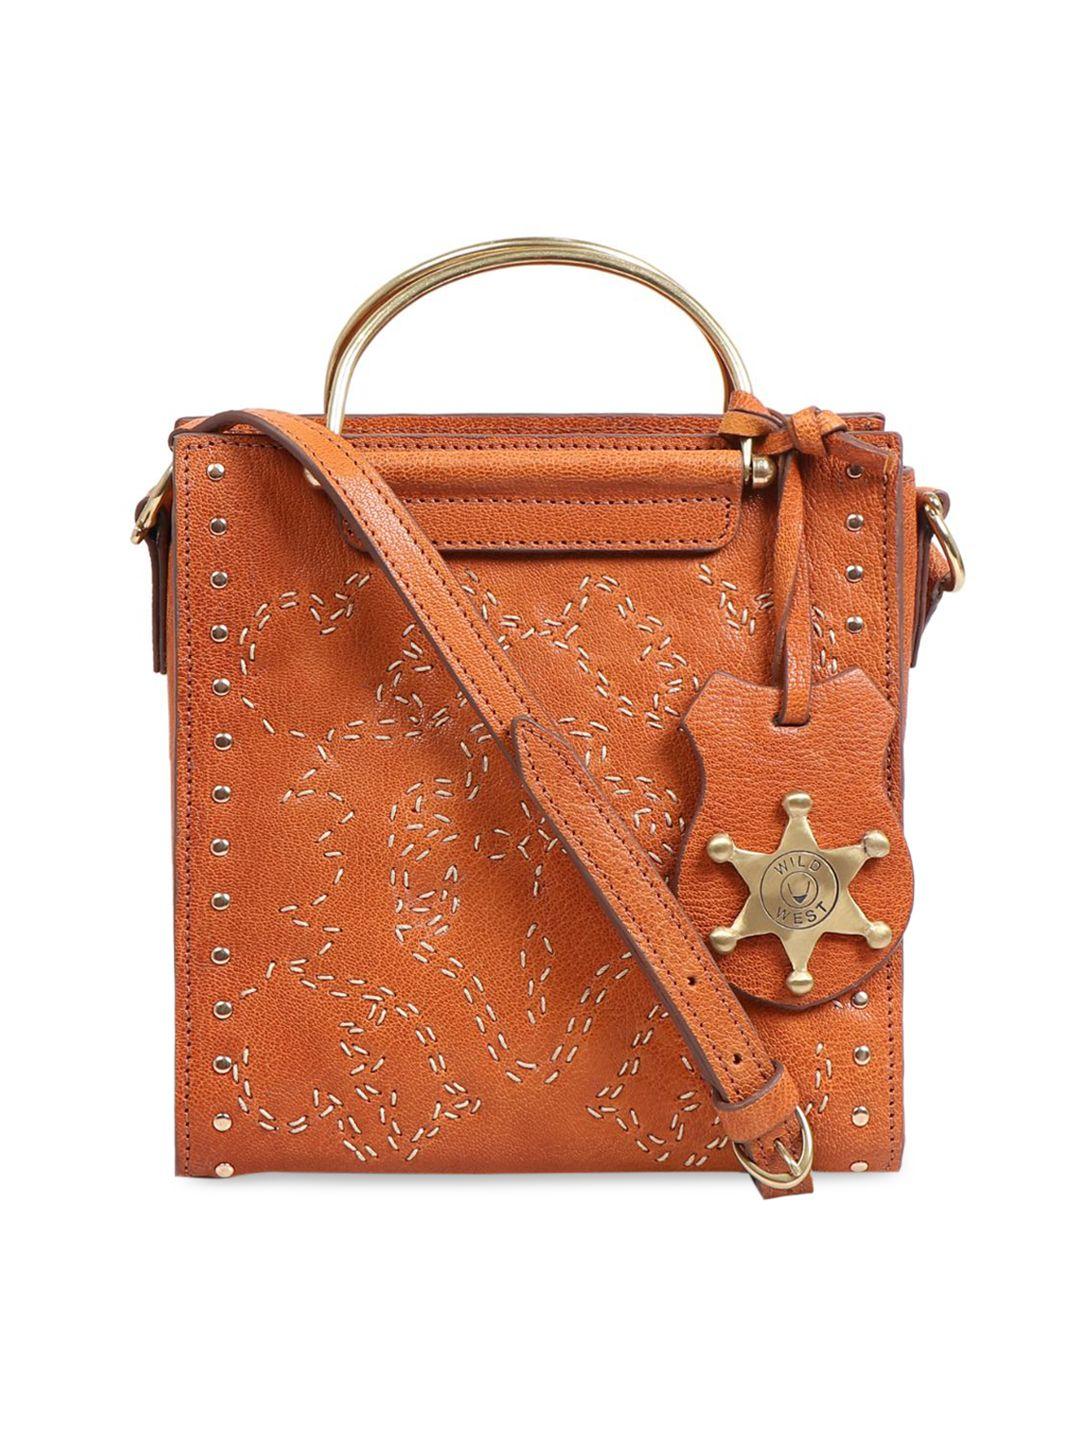 hidesign orange embellished leather structured handheld bag